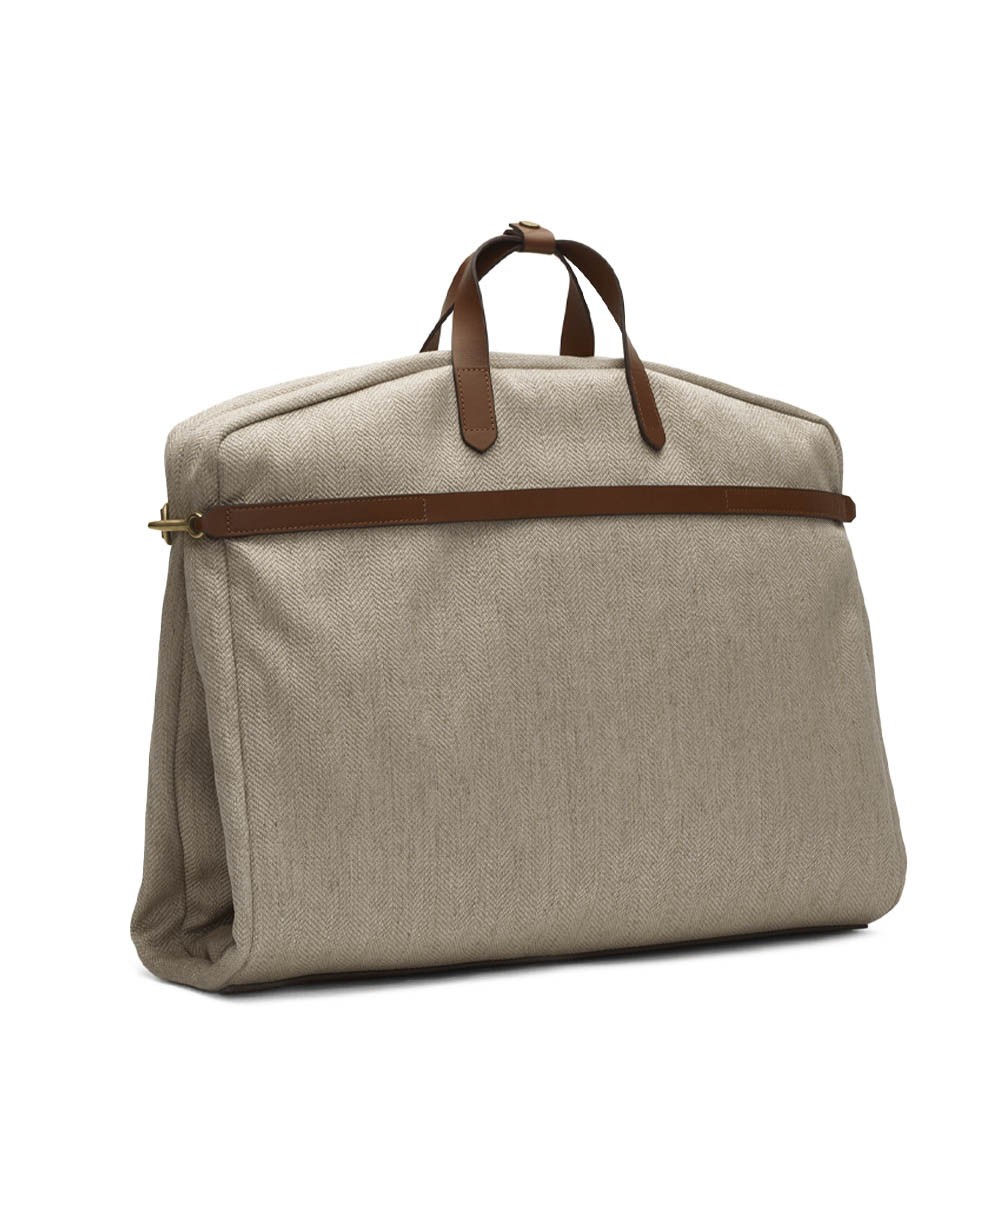 Produktbild der Anzugtasche von Mismo im RAUM concept store 